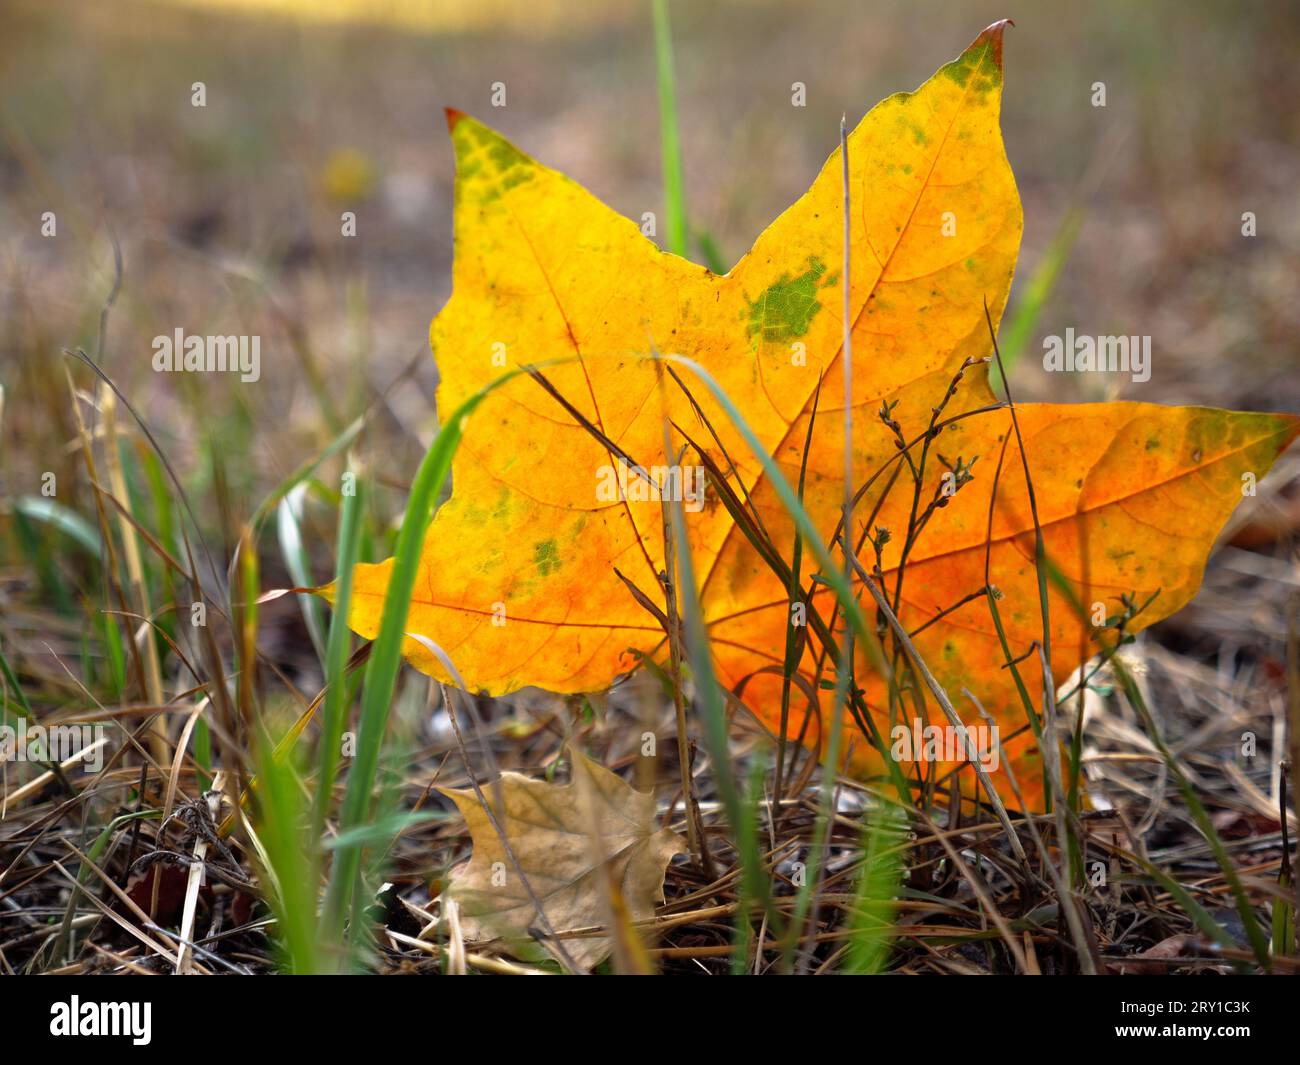 Hermosa hoja de arce de otoño como una estrella naranja y verde caída del árbol y pegada en la costilla en hierba seca. Fondo Golden Fall. Foto de stock